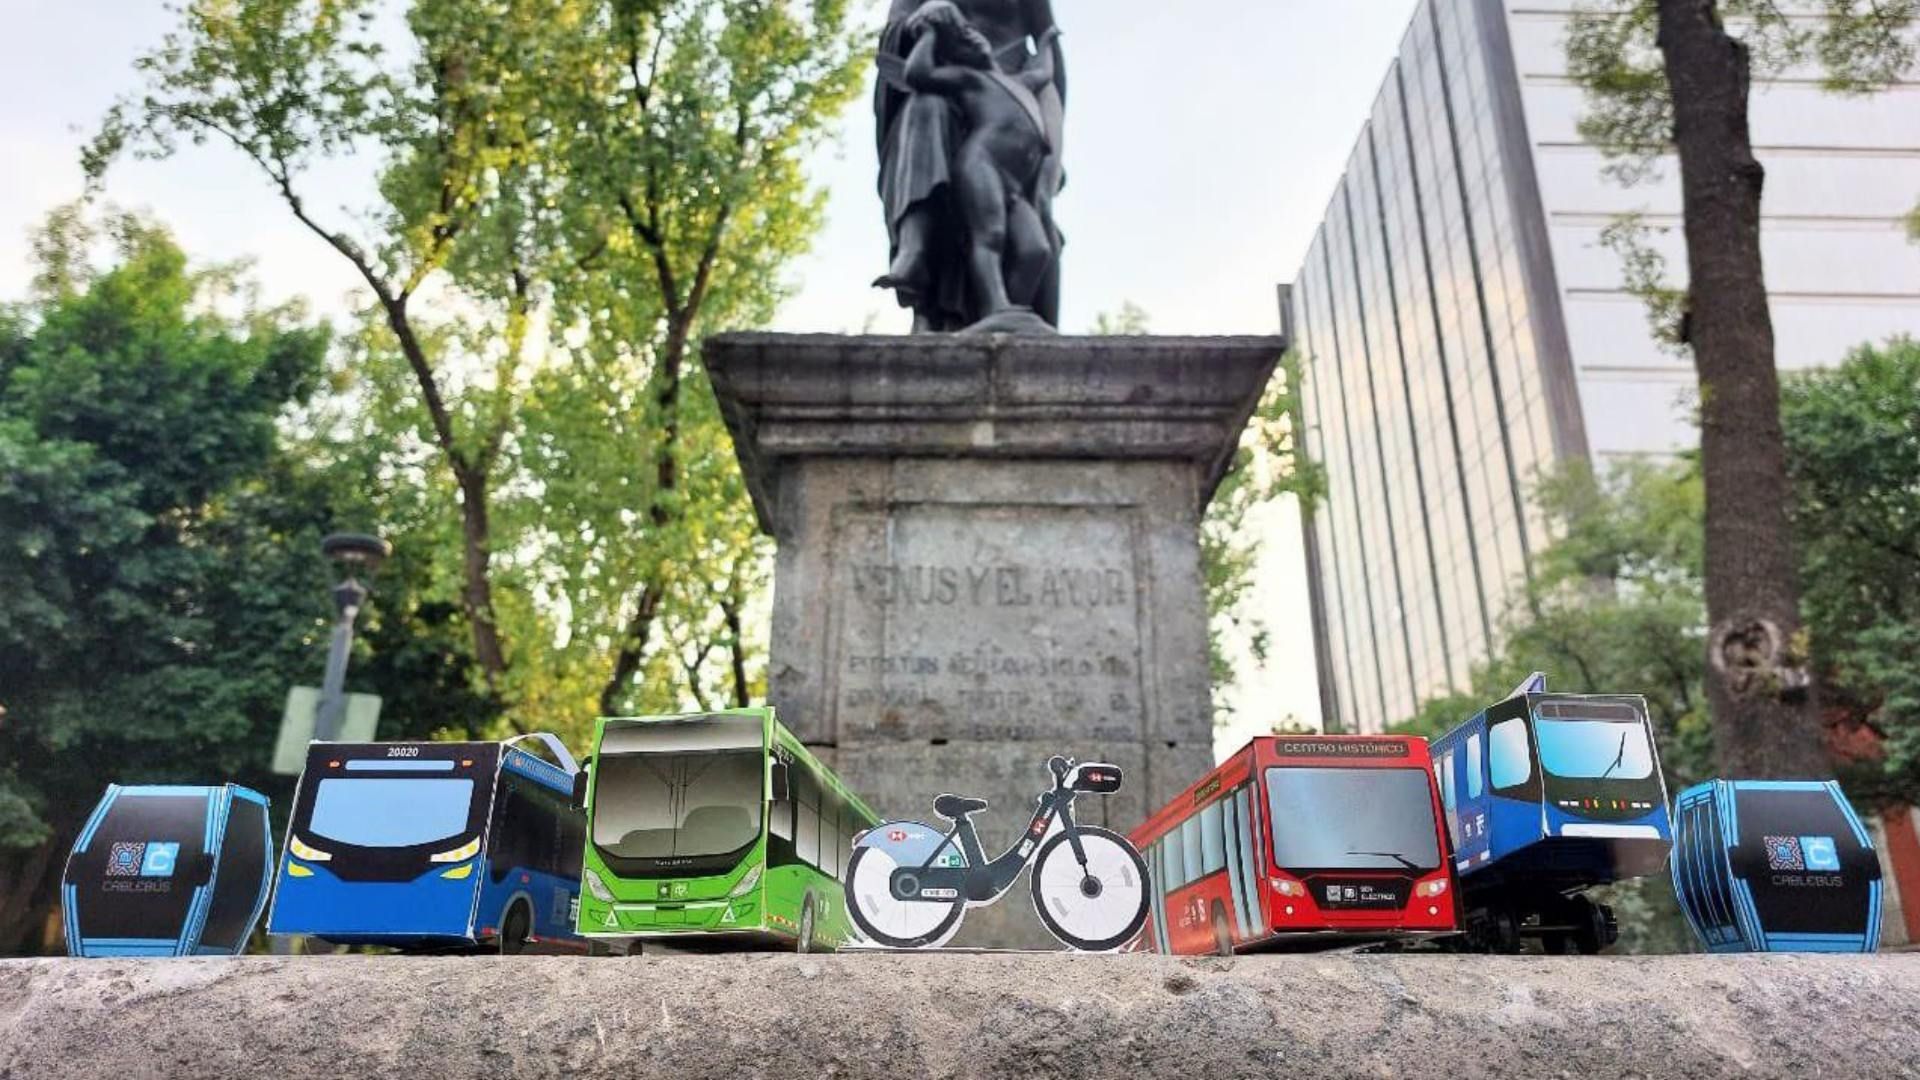 Semovi regalará metrobusitos armables por el Día del Niño